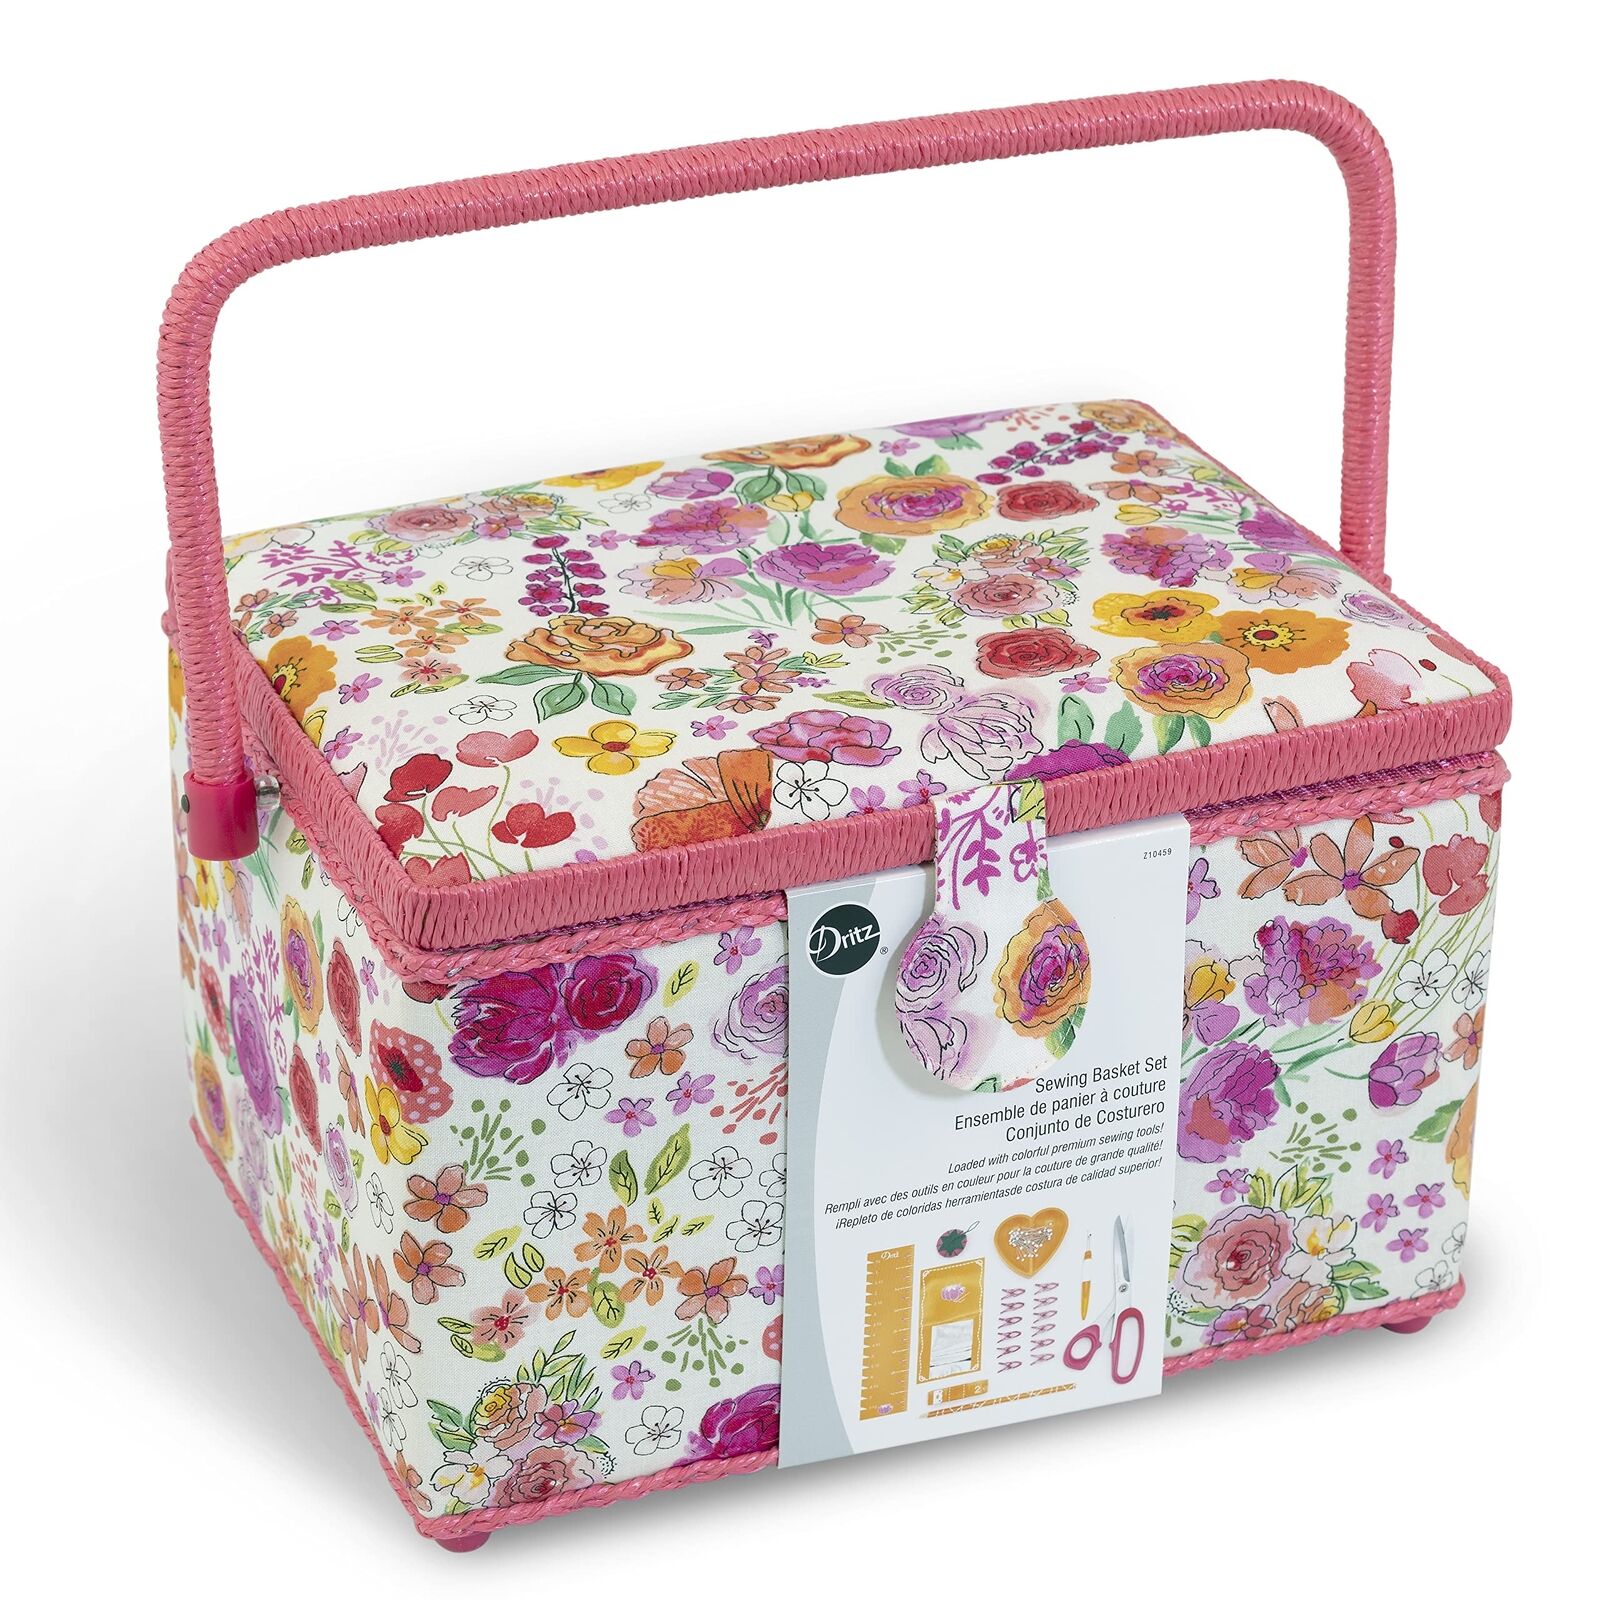 Dritz Large Kit, Pink & Orange Filled Sewing Basket